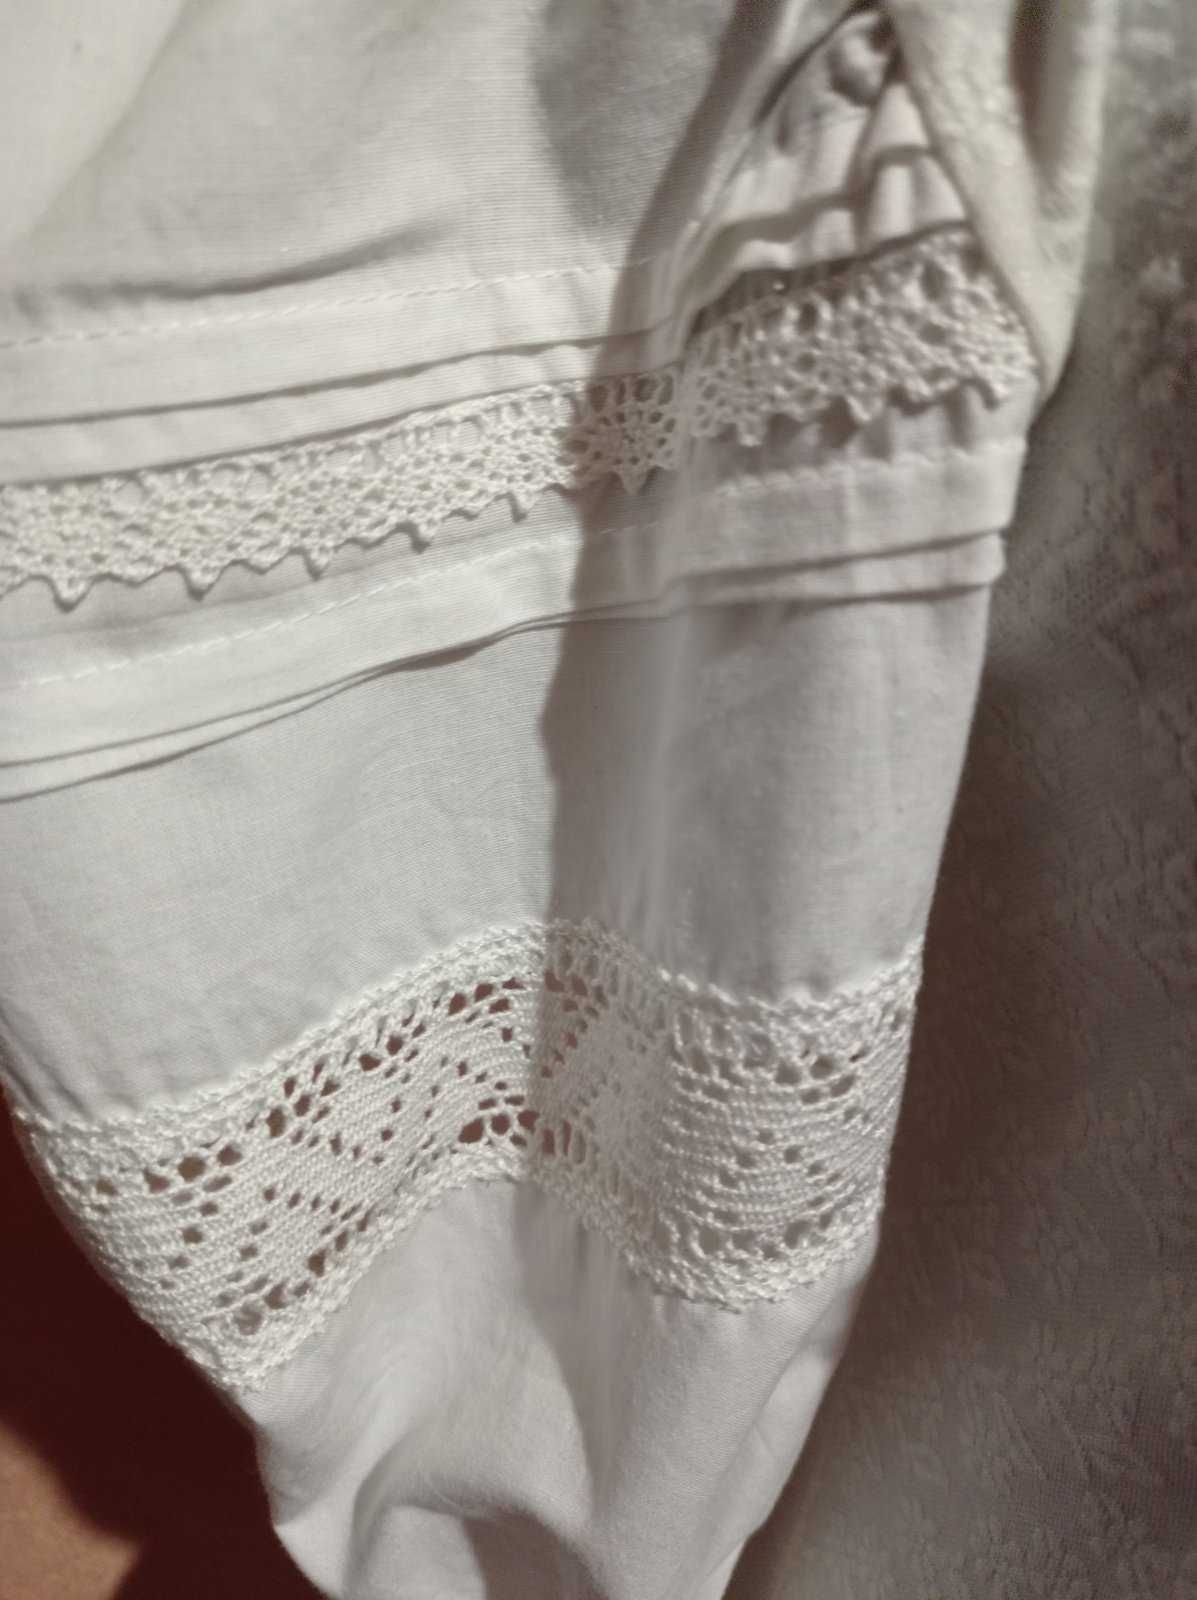 Блузка в народном стиле с пышными рукавами (Франция).